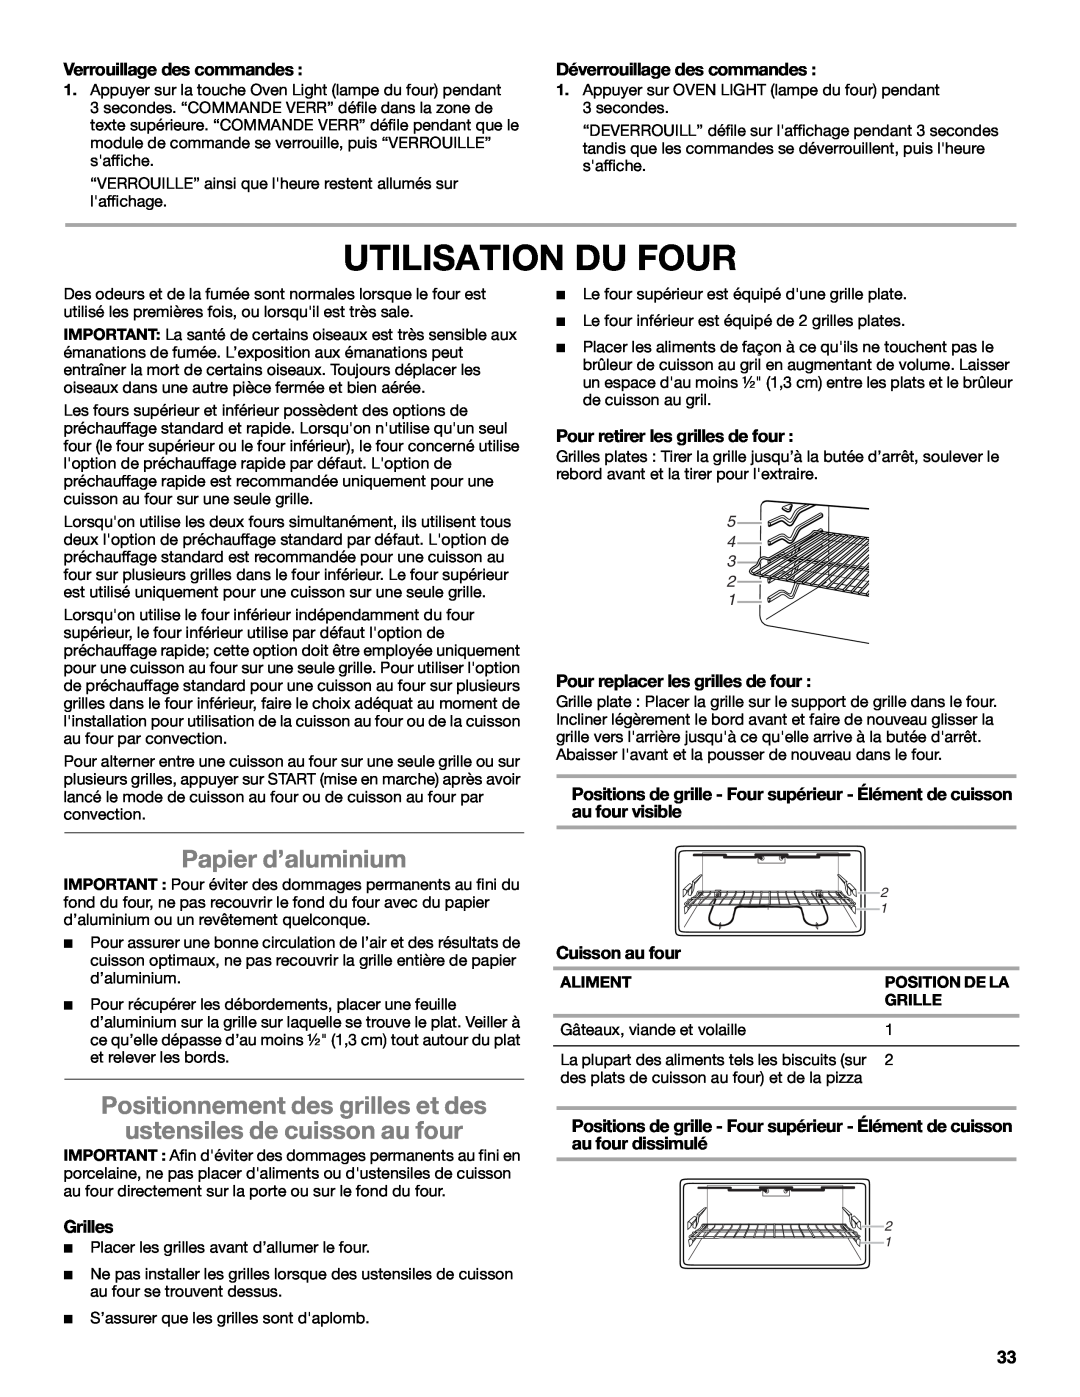 Whirlpool GGG388LXS Utilisation Du Four, Papier d’aluminium, Verrouillage des commandes, Déverrouillage des commandes 